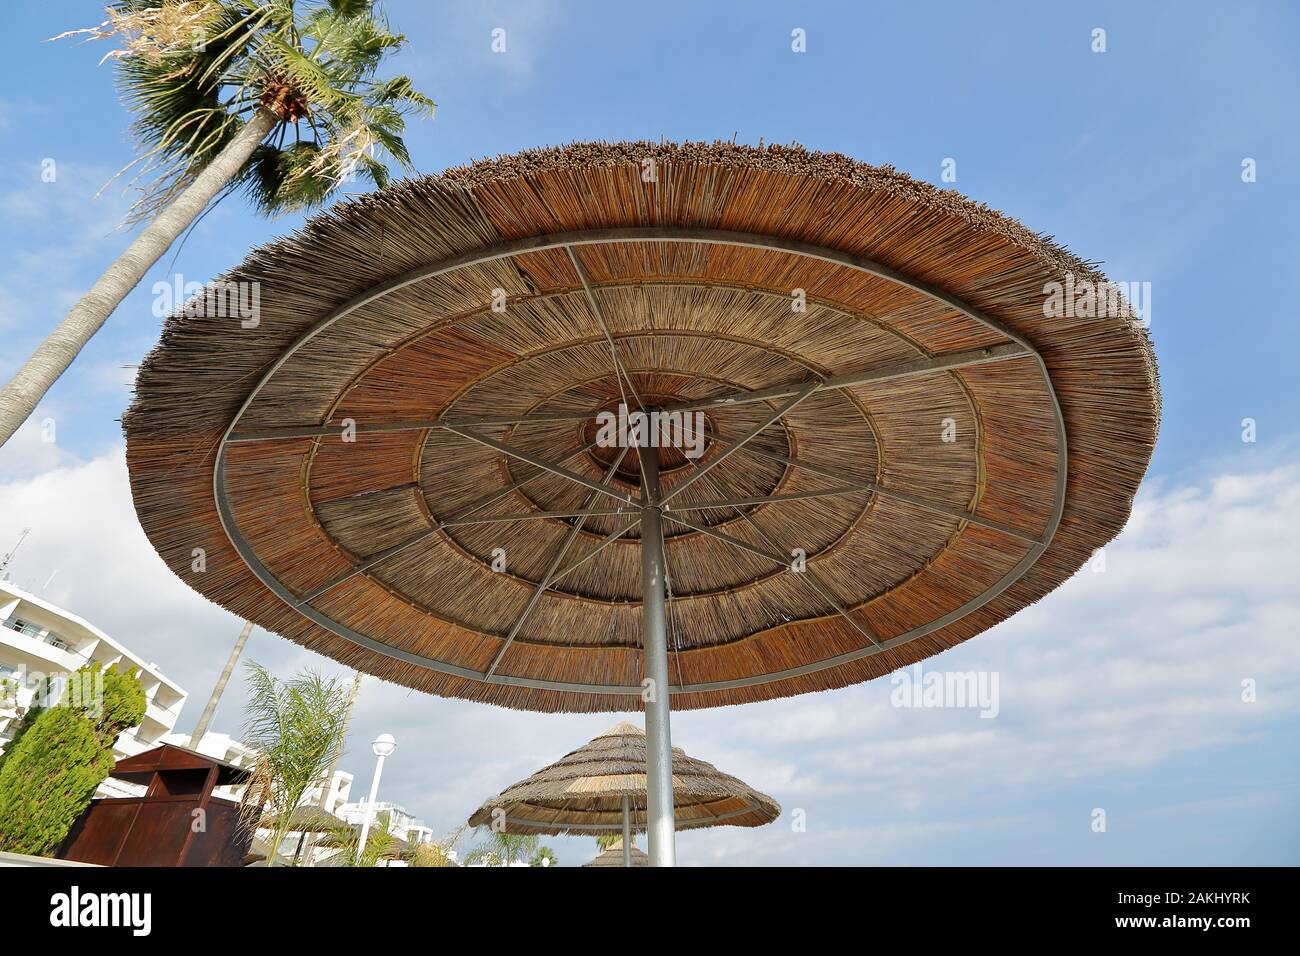 Schilfschirm von unten gegen blauen sonnigen Himmel gesehen, beliebter Ferienort in Zypern. Stockfoto